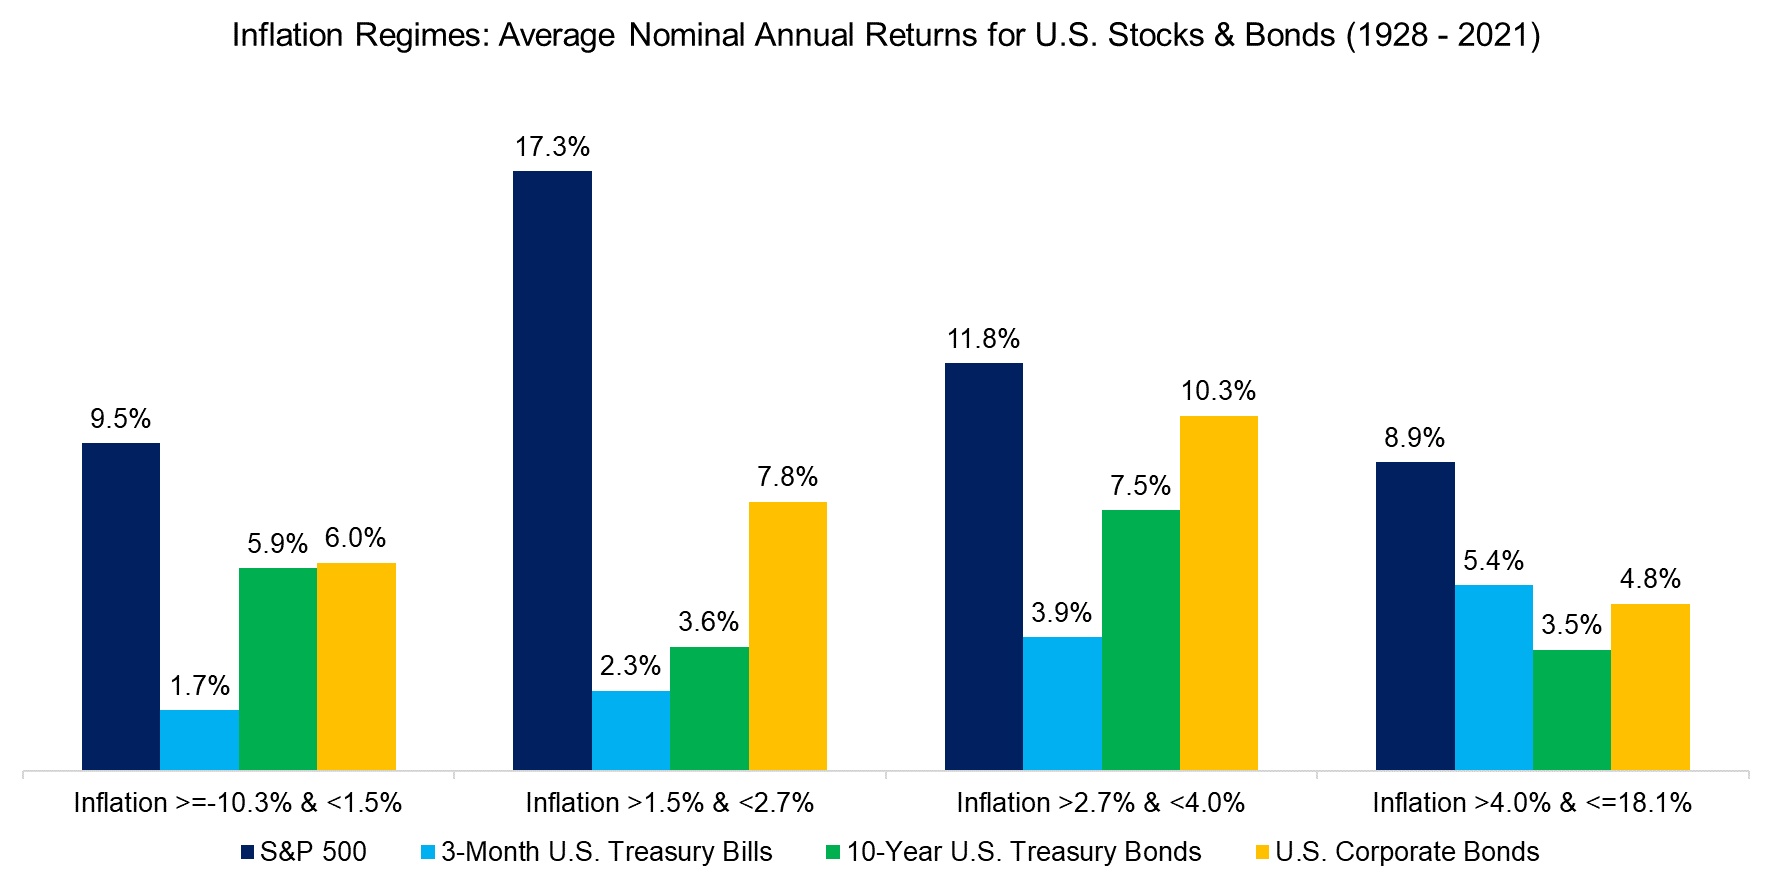 Inflation Regimes Average Nominal Annual Returns for U.S. Stocks & Bonds (1928 - 2021)